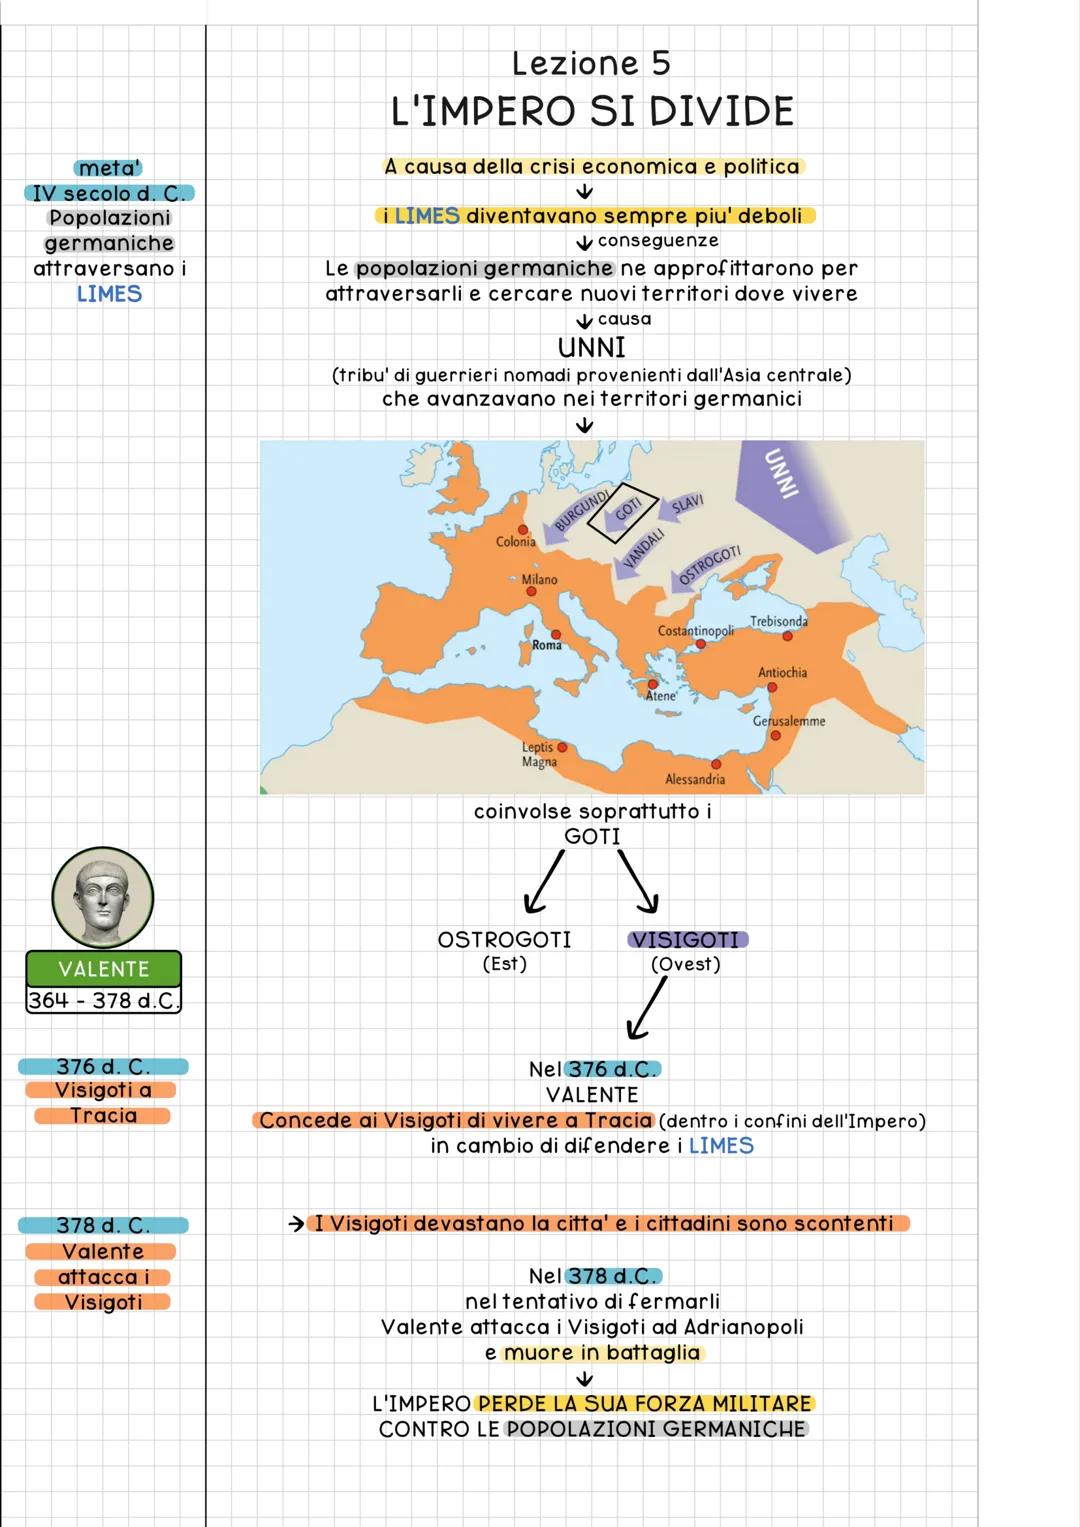 
<h3 id="unimperatoreromano">Un Imperatore Romano</h3>
<p>La crisi dell'Impero Romano è un periodo estremamente significativo nella storia d